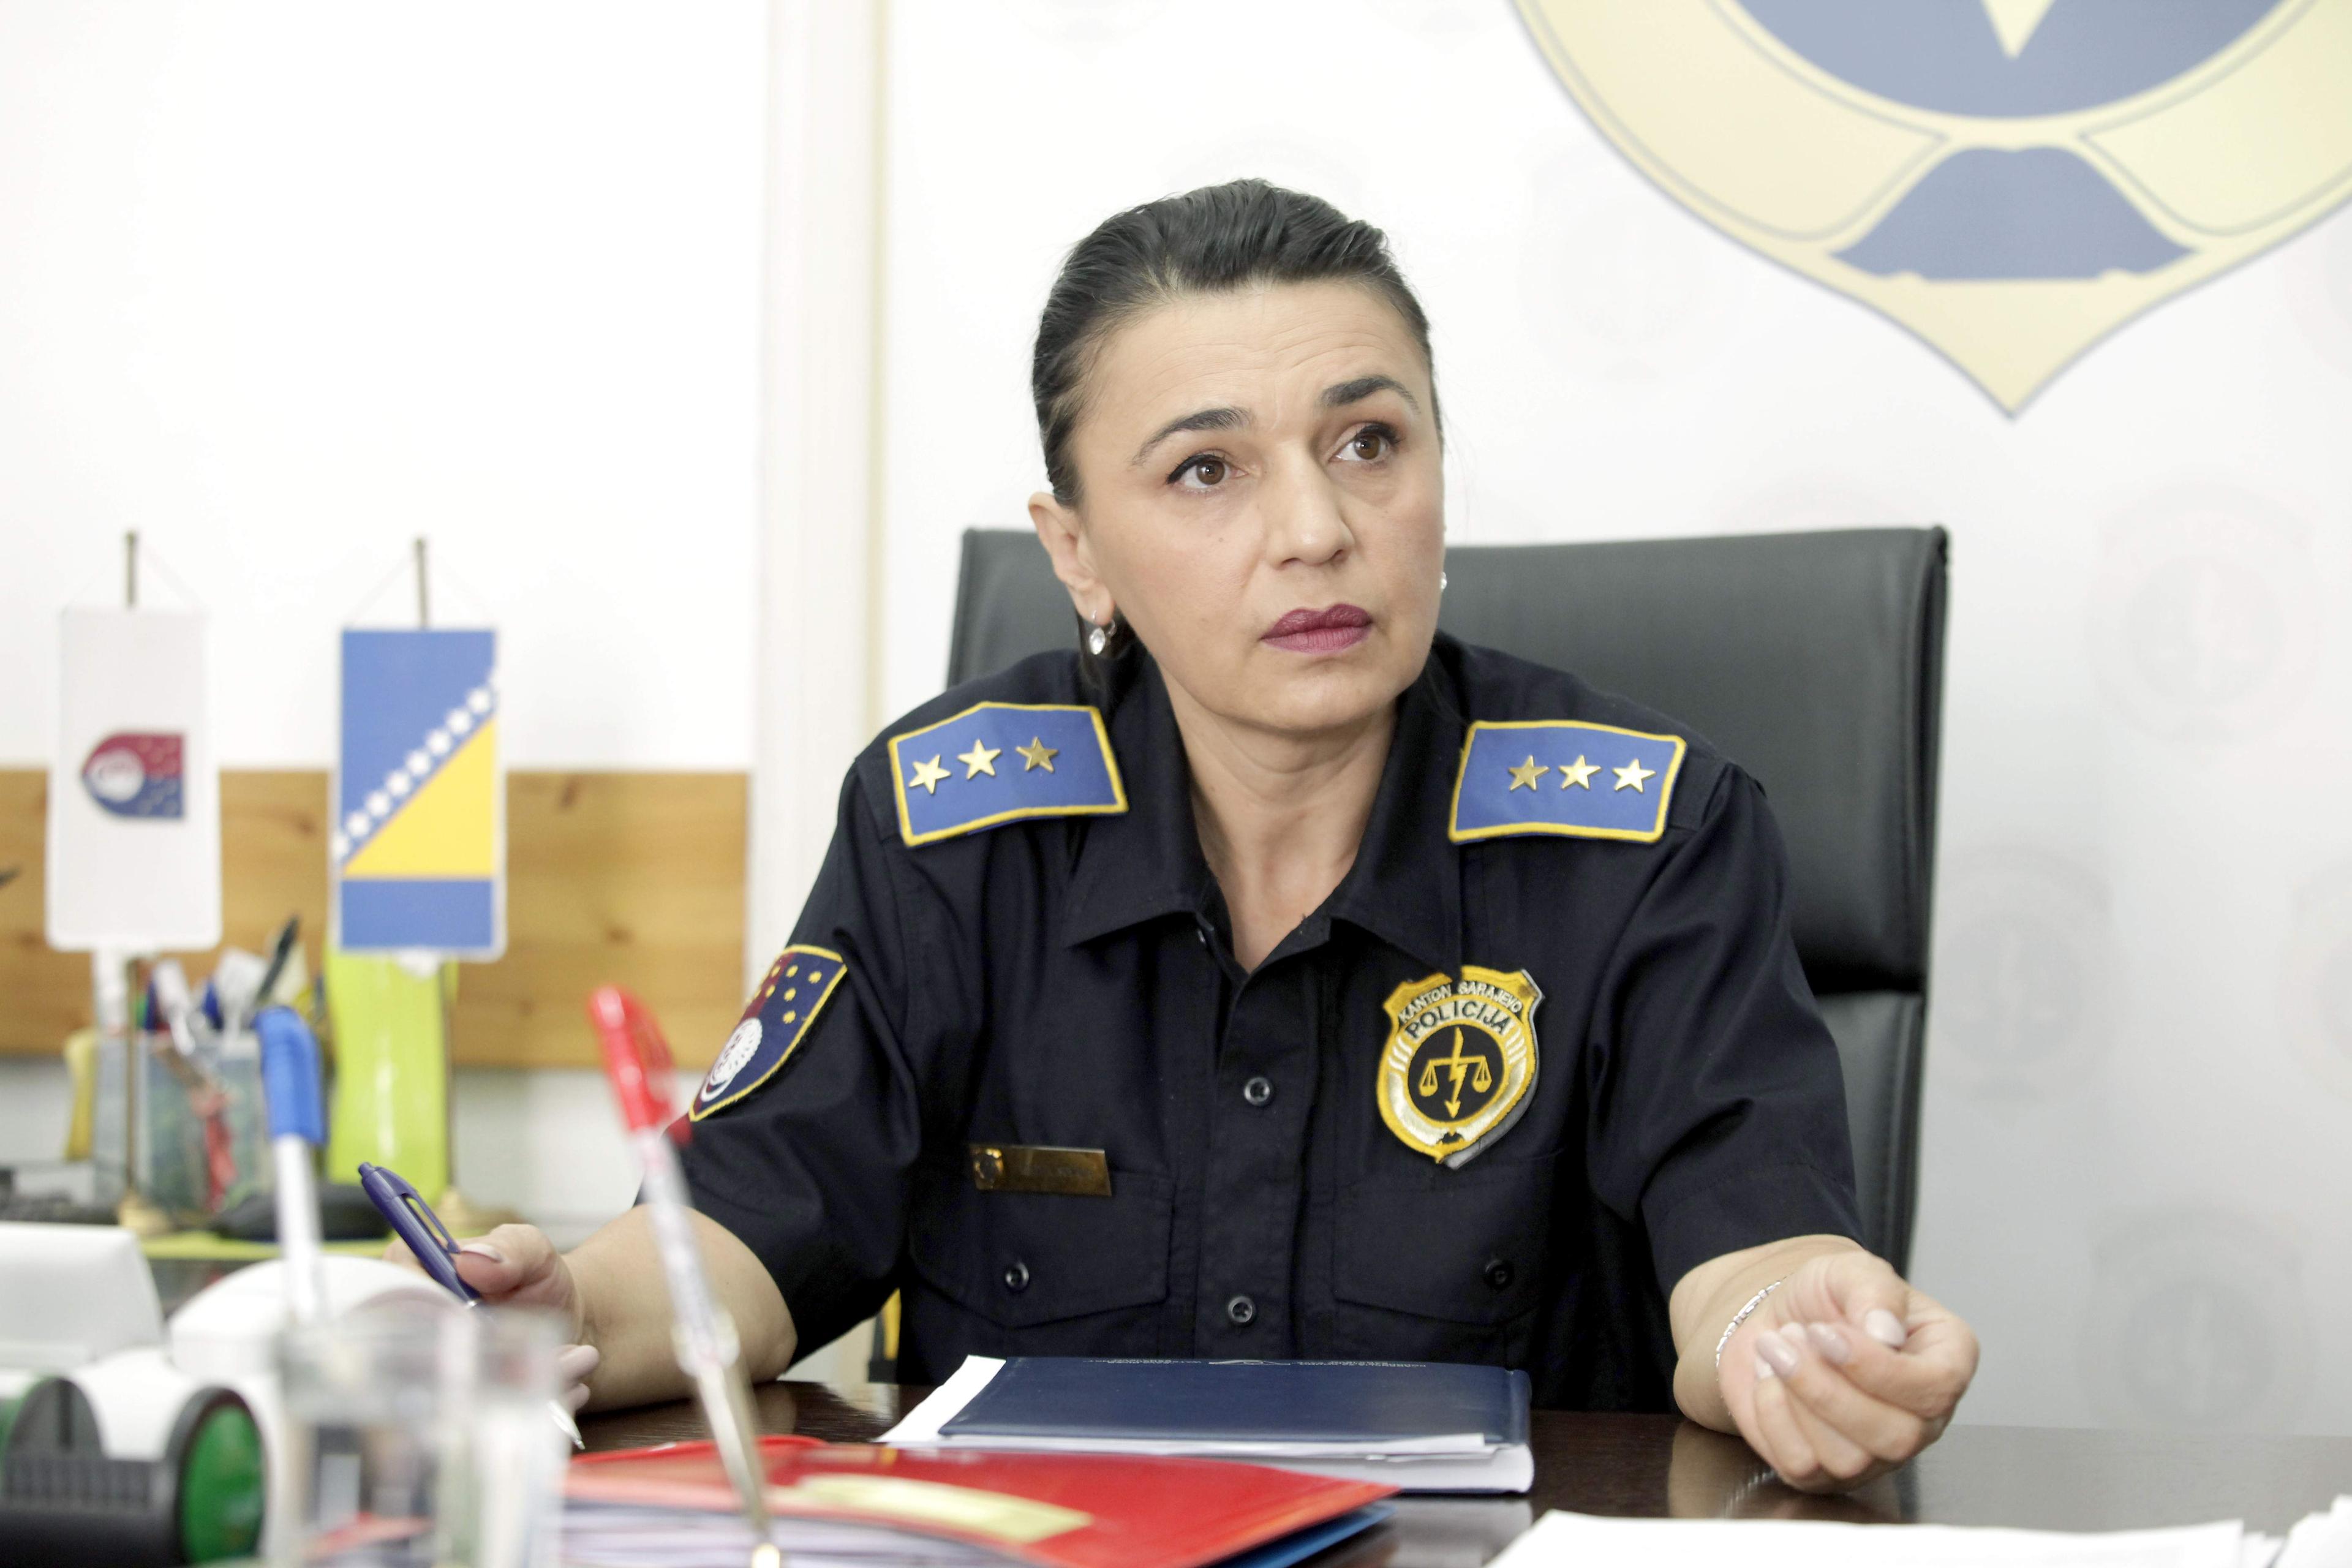 Kuldija: Policajci su posebno fokusirani na frekventna mjesta ( S. Saletović) - Avaz